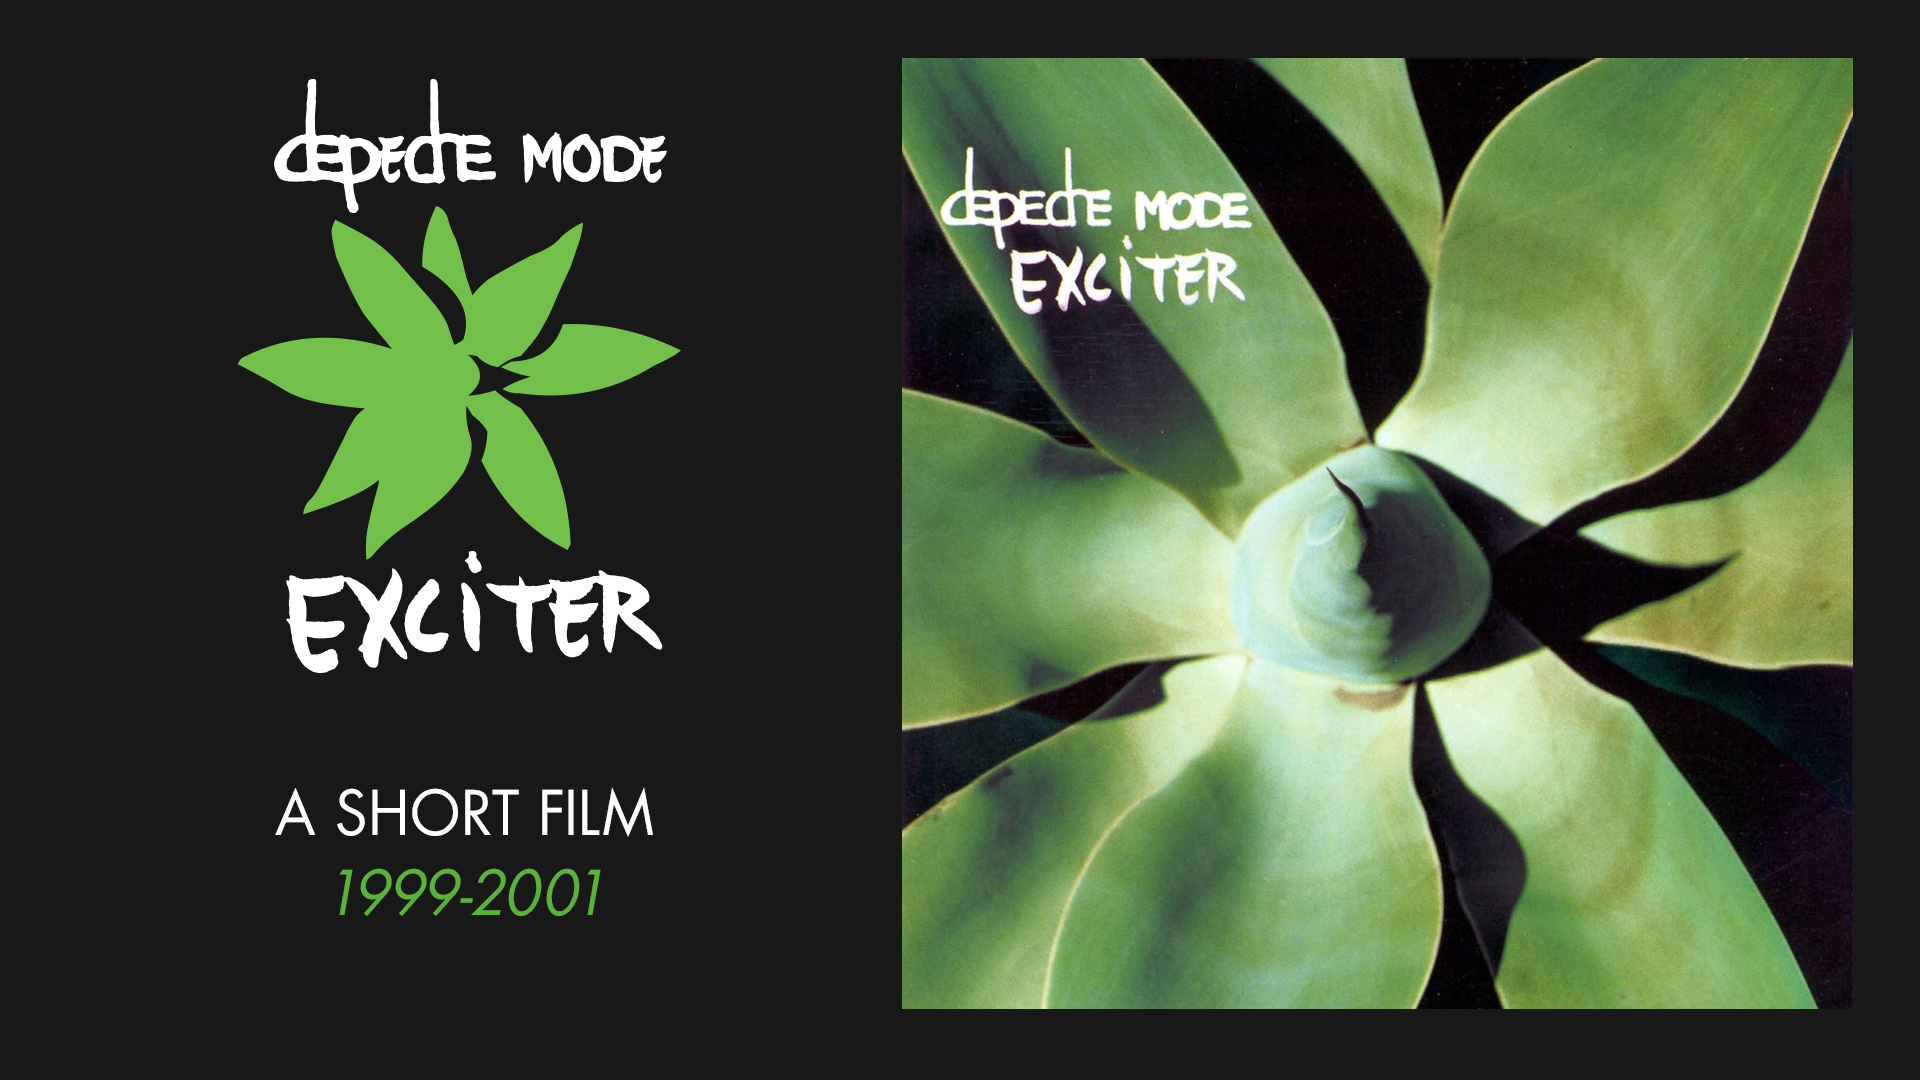 Depeche Mode 2001 - Exсiter - A Short Film (русские субтитры)